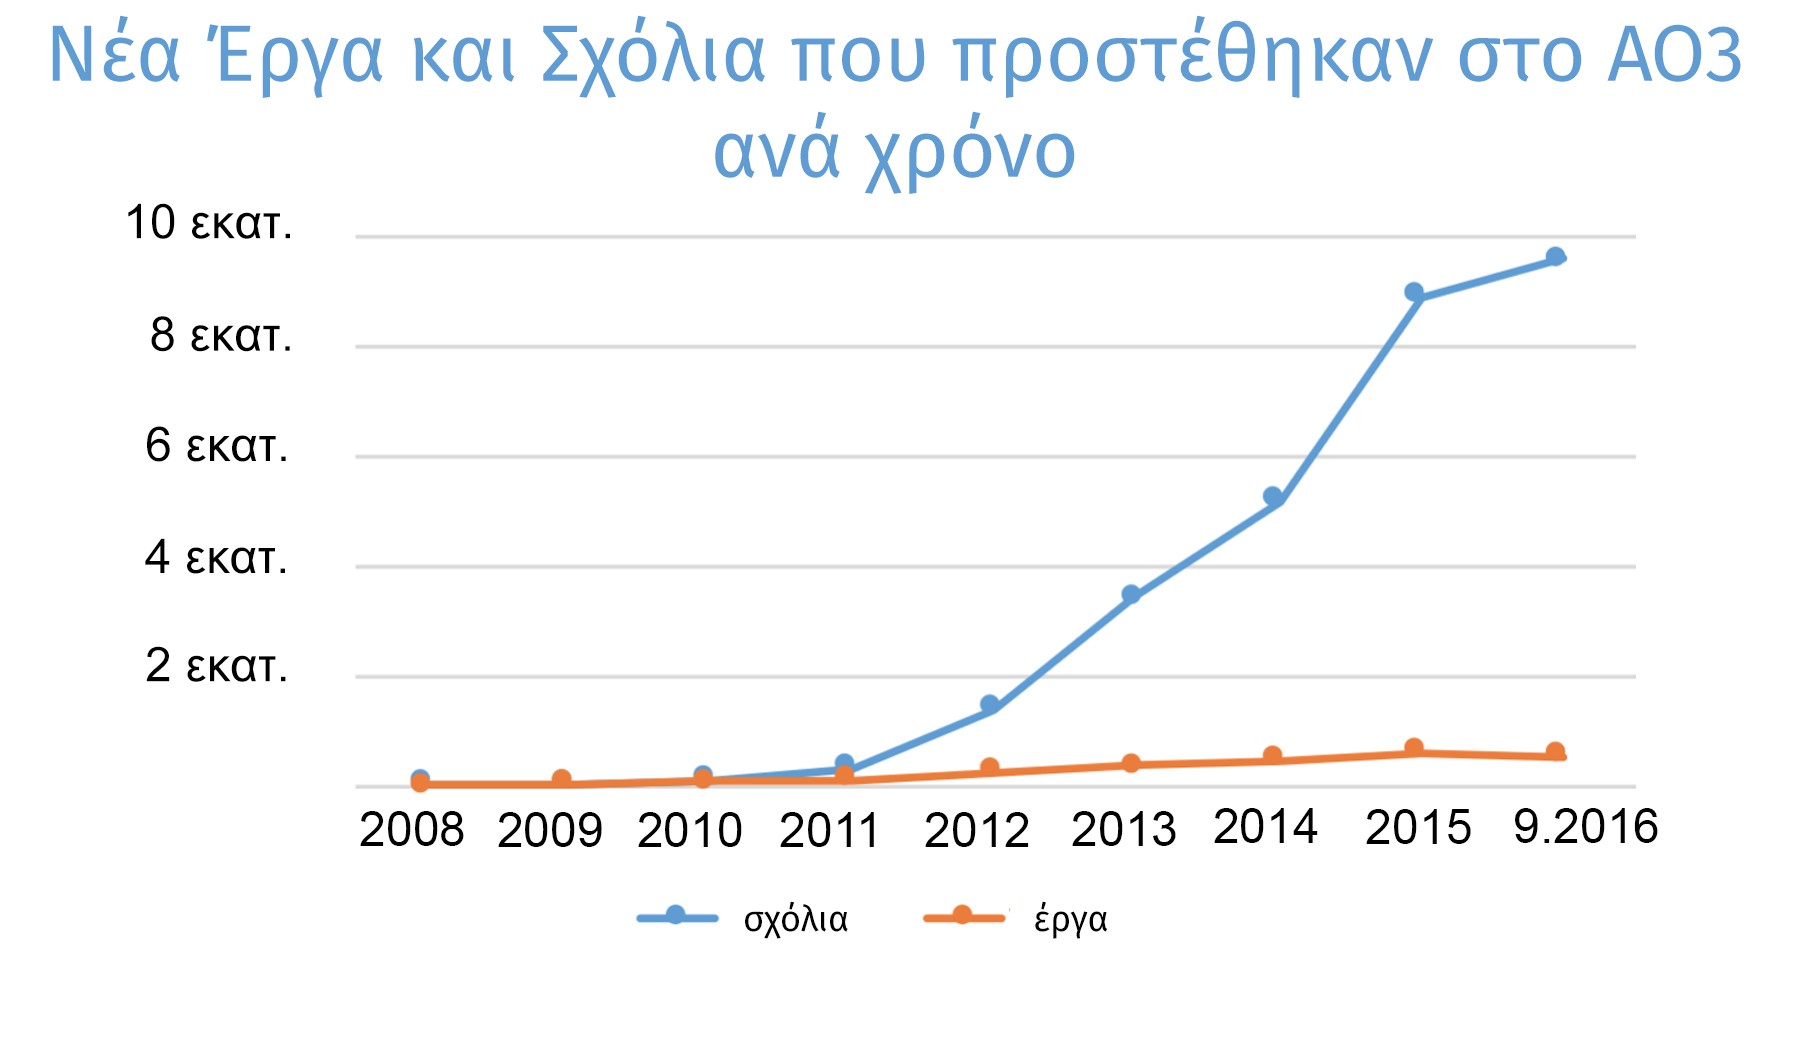 Γράφημα εξέλιξης των έργων και των σχολίων που δημιουργήθηκαν κάθε χρόνο στο ΑΟ3, από μηδέν το 2008 σε πάνω από 500.000 έργα και 9,5 εκατομμύρια σχόλια μόνο τη φετινή χρονιά.